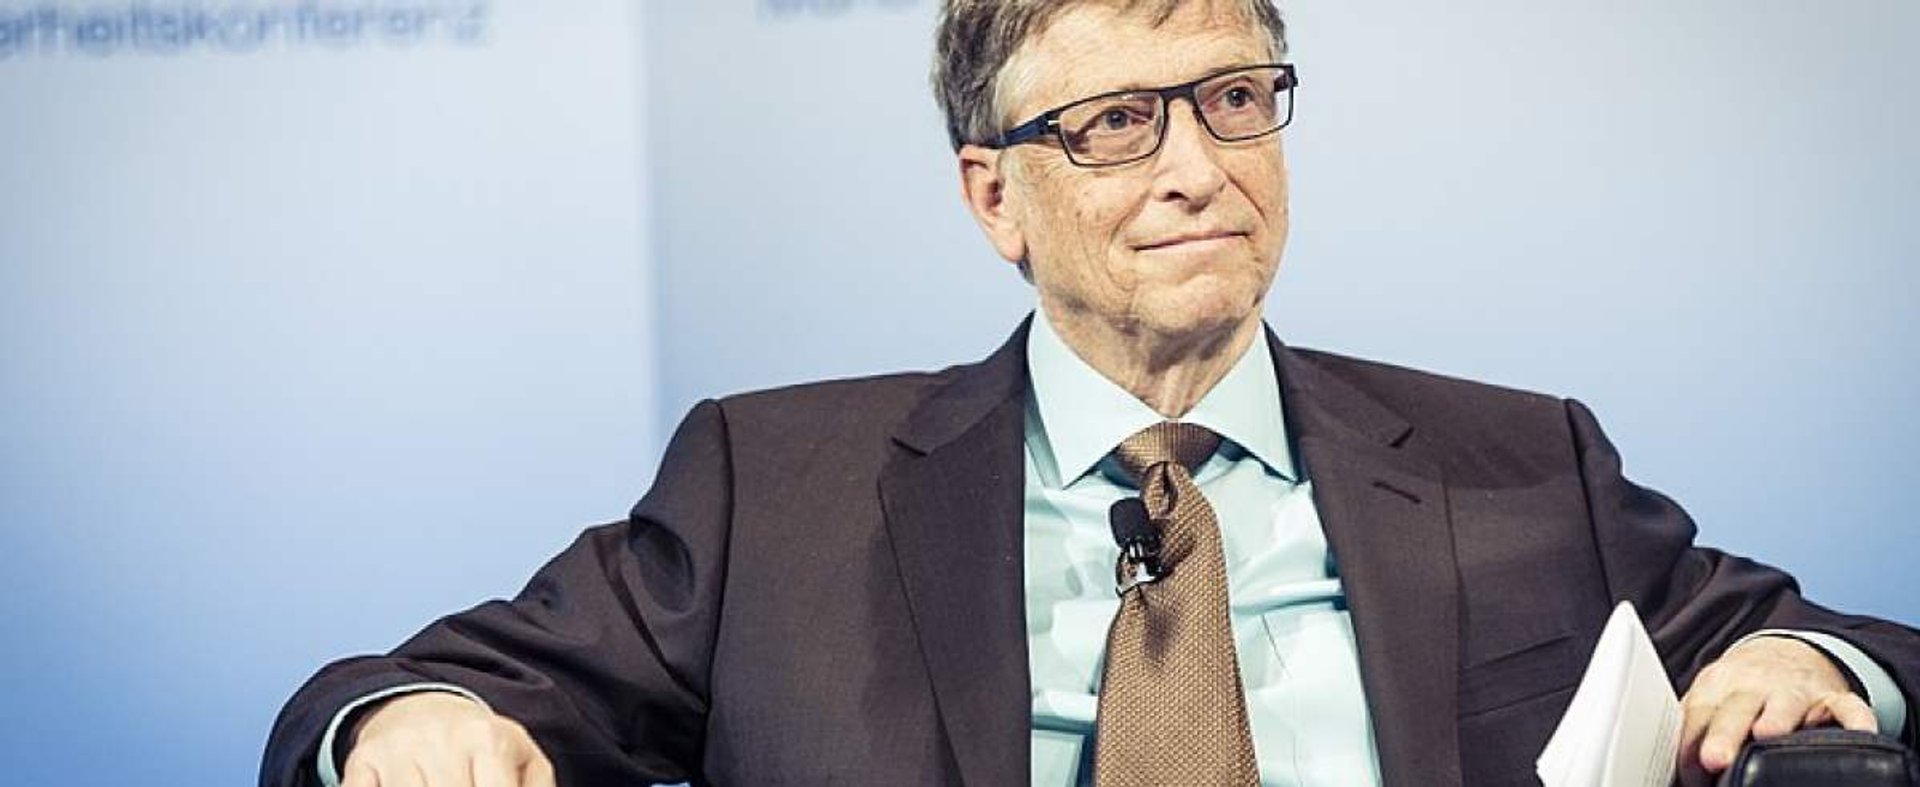 Bill Gates z kolejną udaną inwestycją